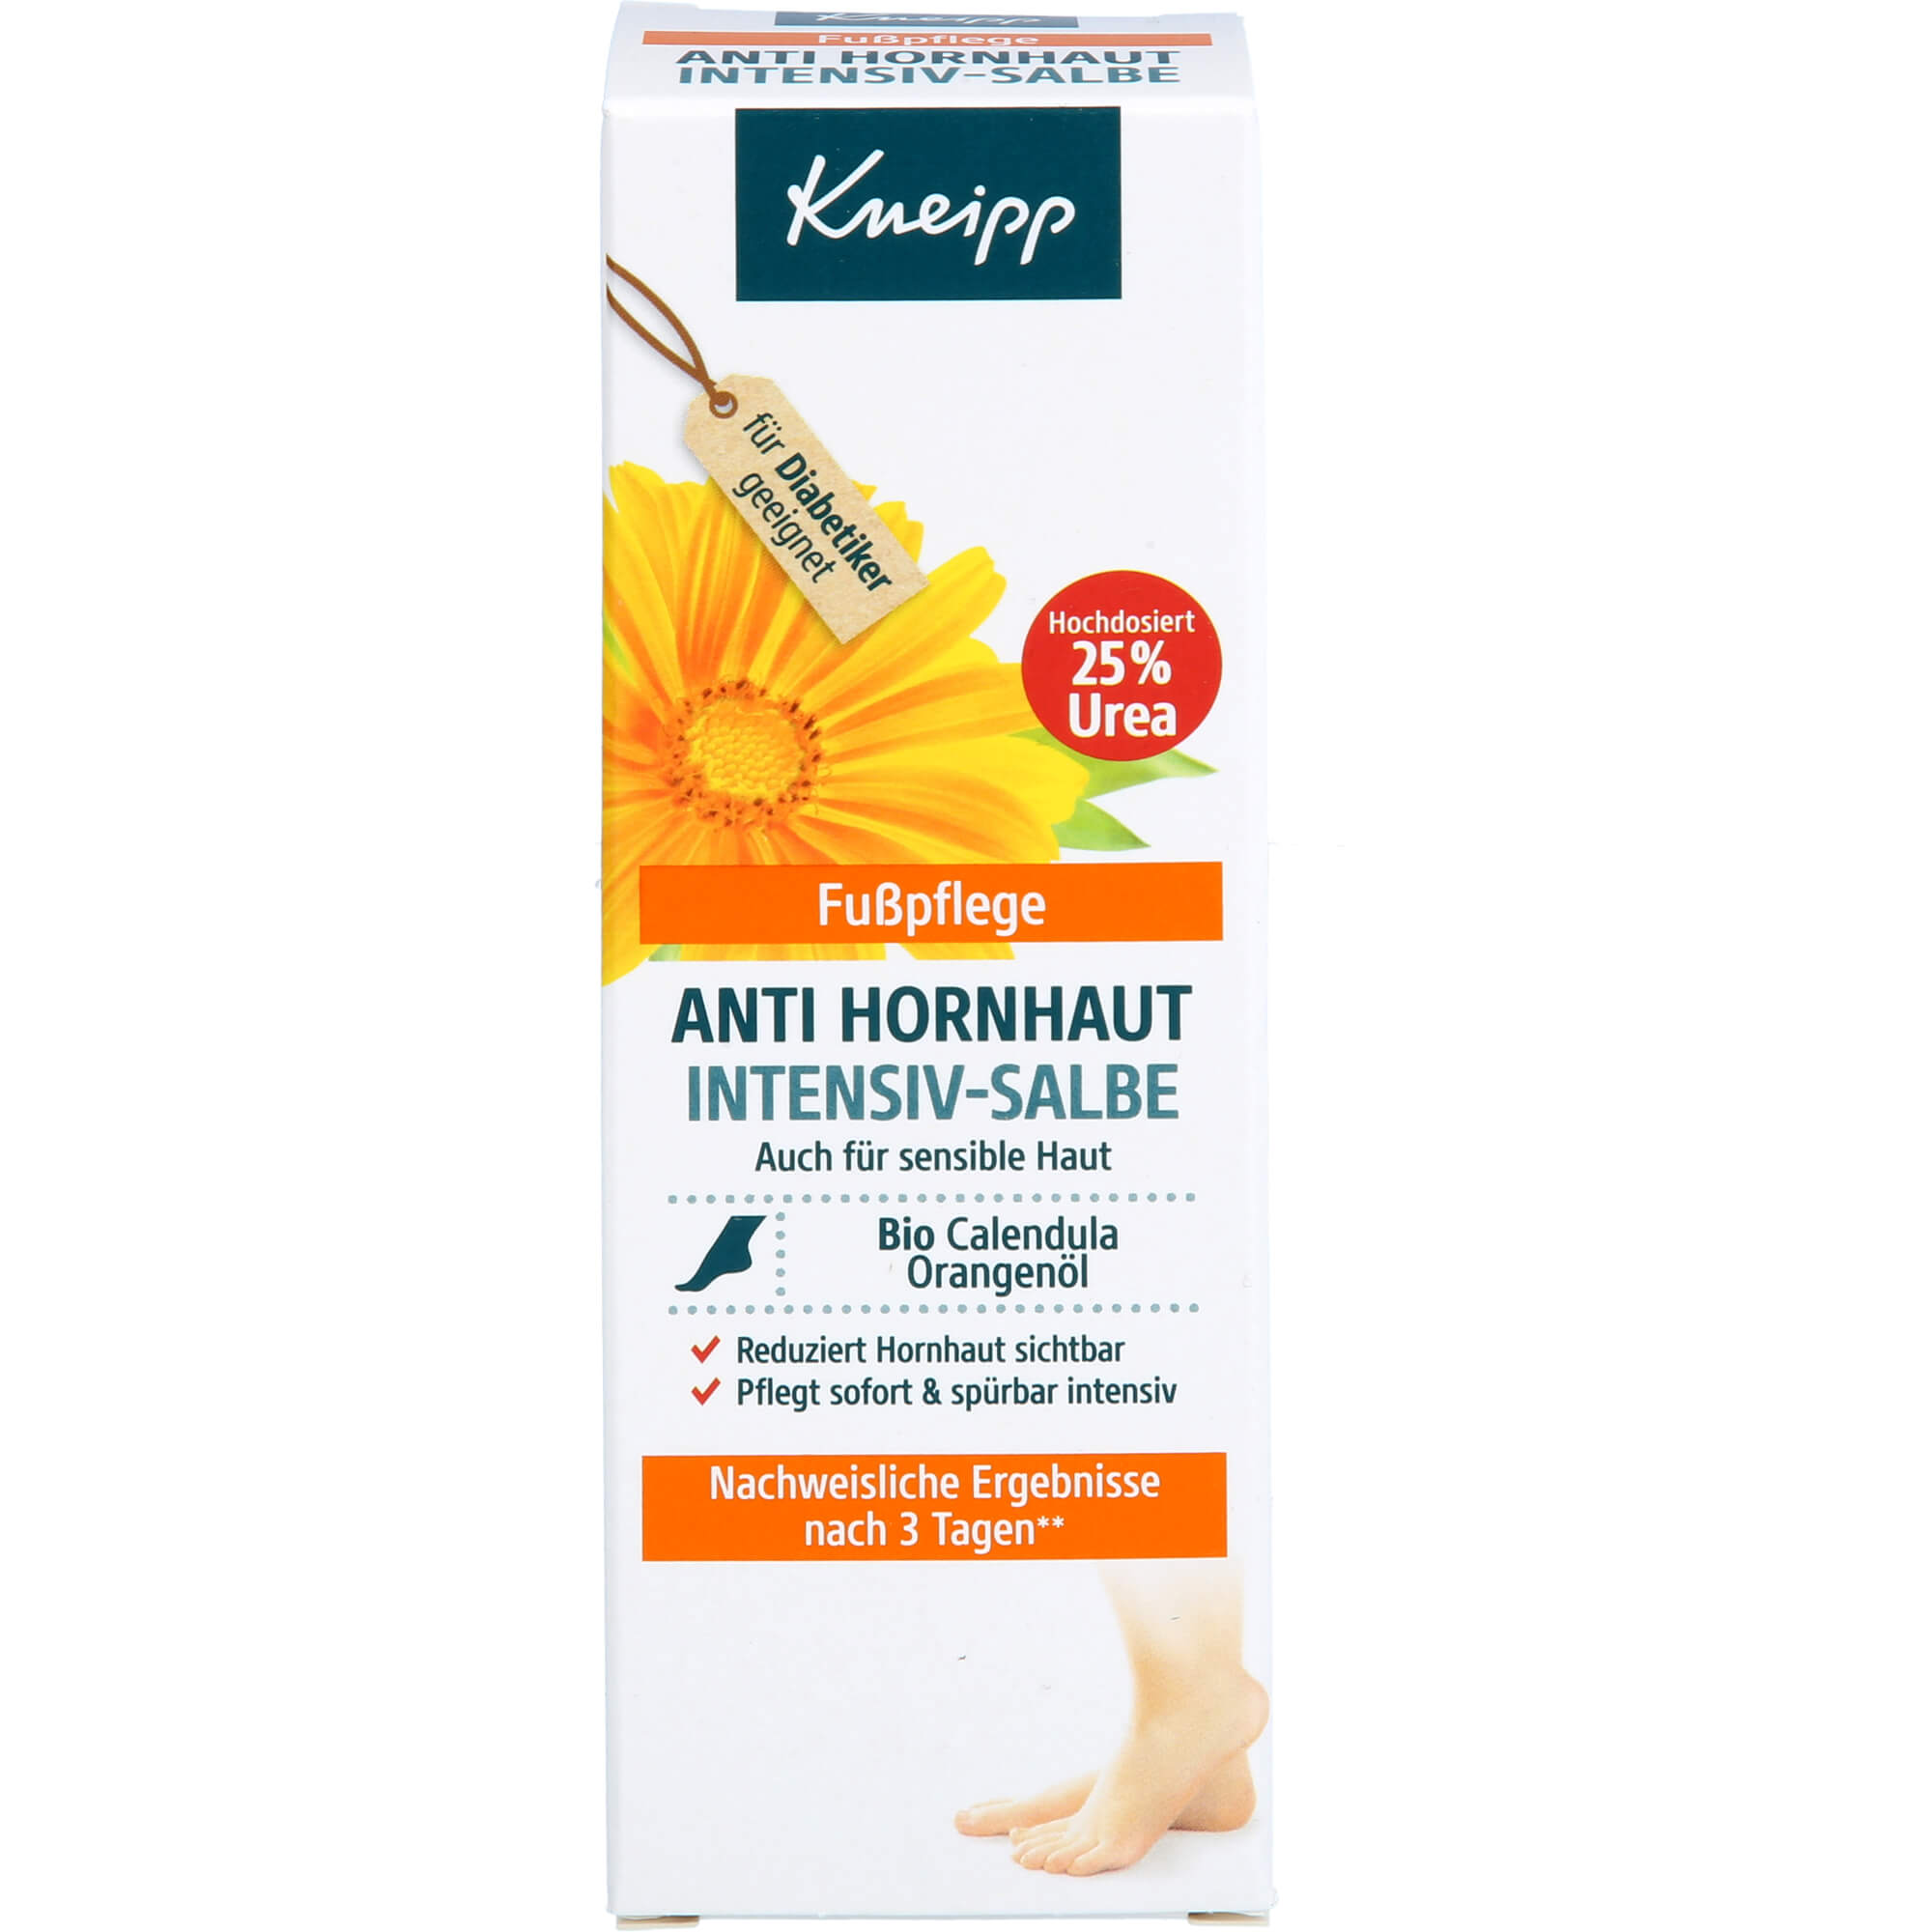 KNEIPP Anti Hornhaut Intensiv-Salbe Fußpflege